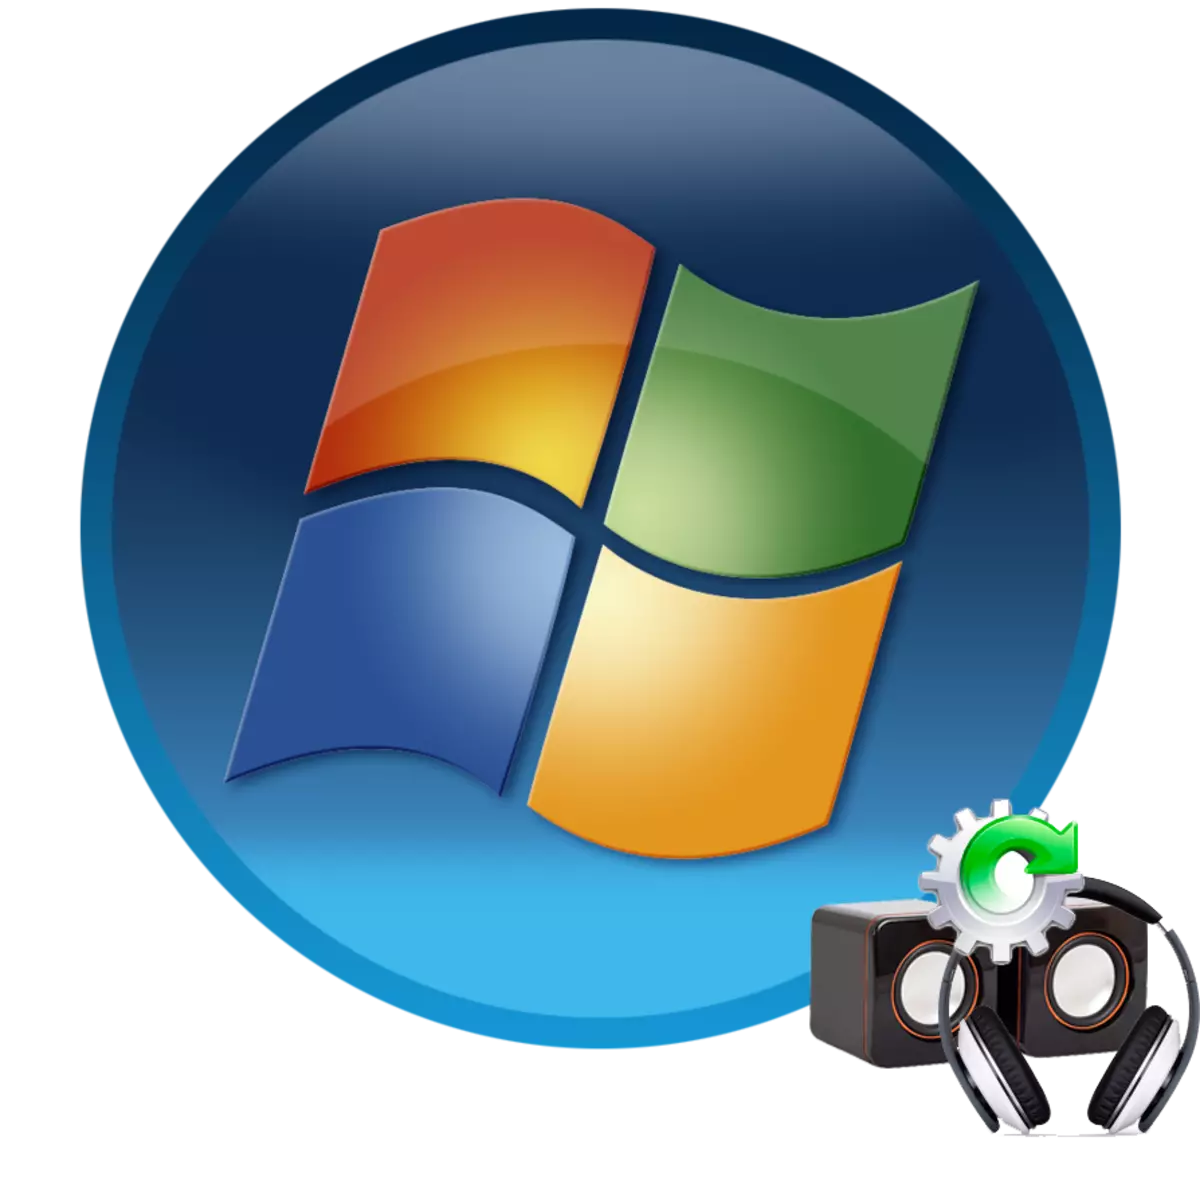 Windows 7 bilan kompyuterda ovoz konfiguratsiyasi